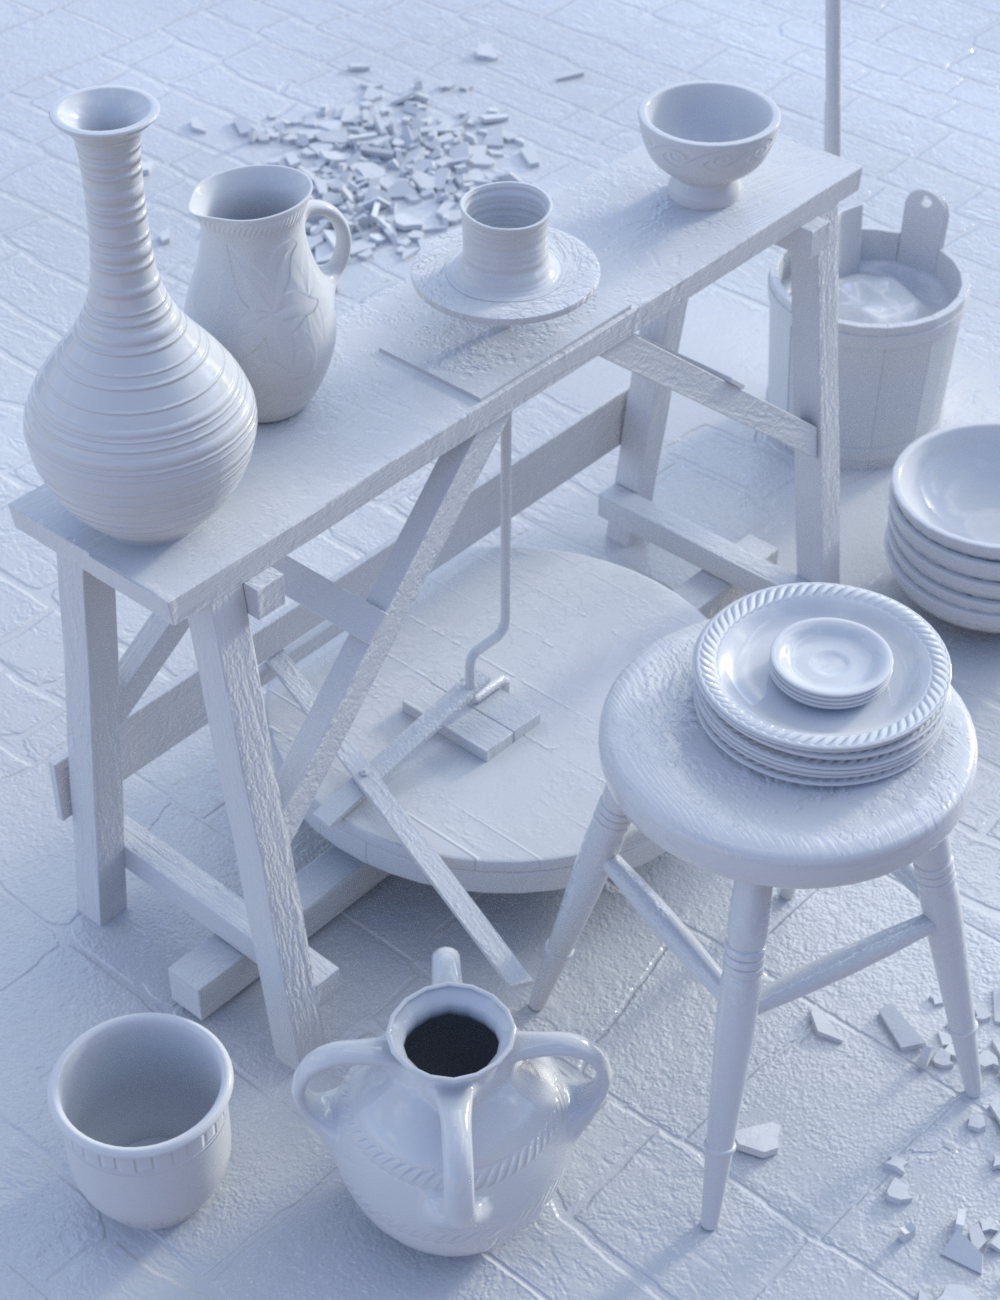 Potters Workshop by: Merlin Studios, 3D Models by Daz 3D